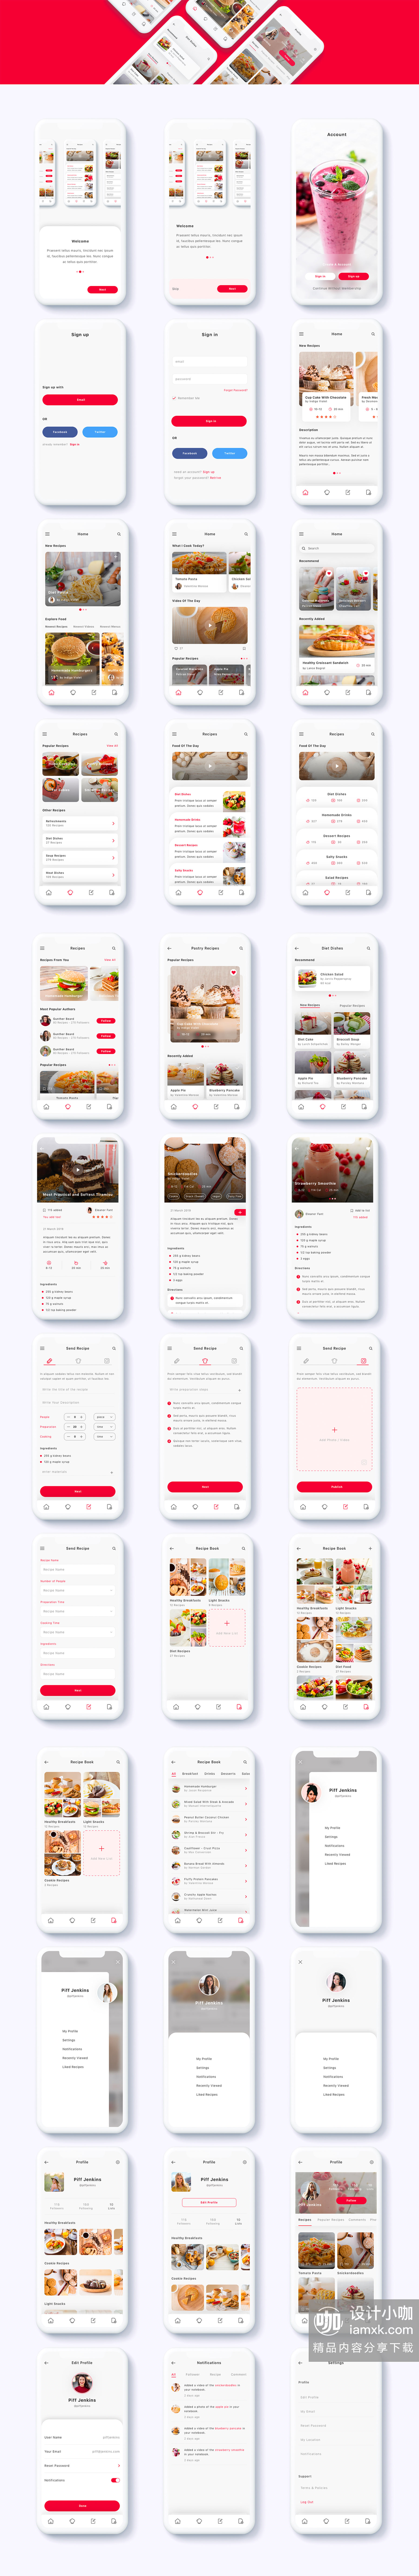 蚂蚁素材下午茶：美食社交订餐点餐类APP UI KIT套装模板下载 app设计app界面设计Sketch素材Sketch模板 [Sketch,XD]插图(5)